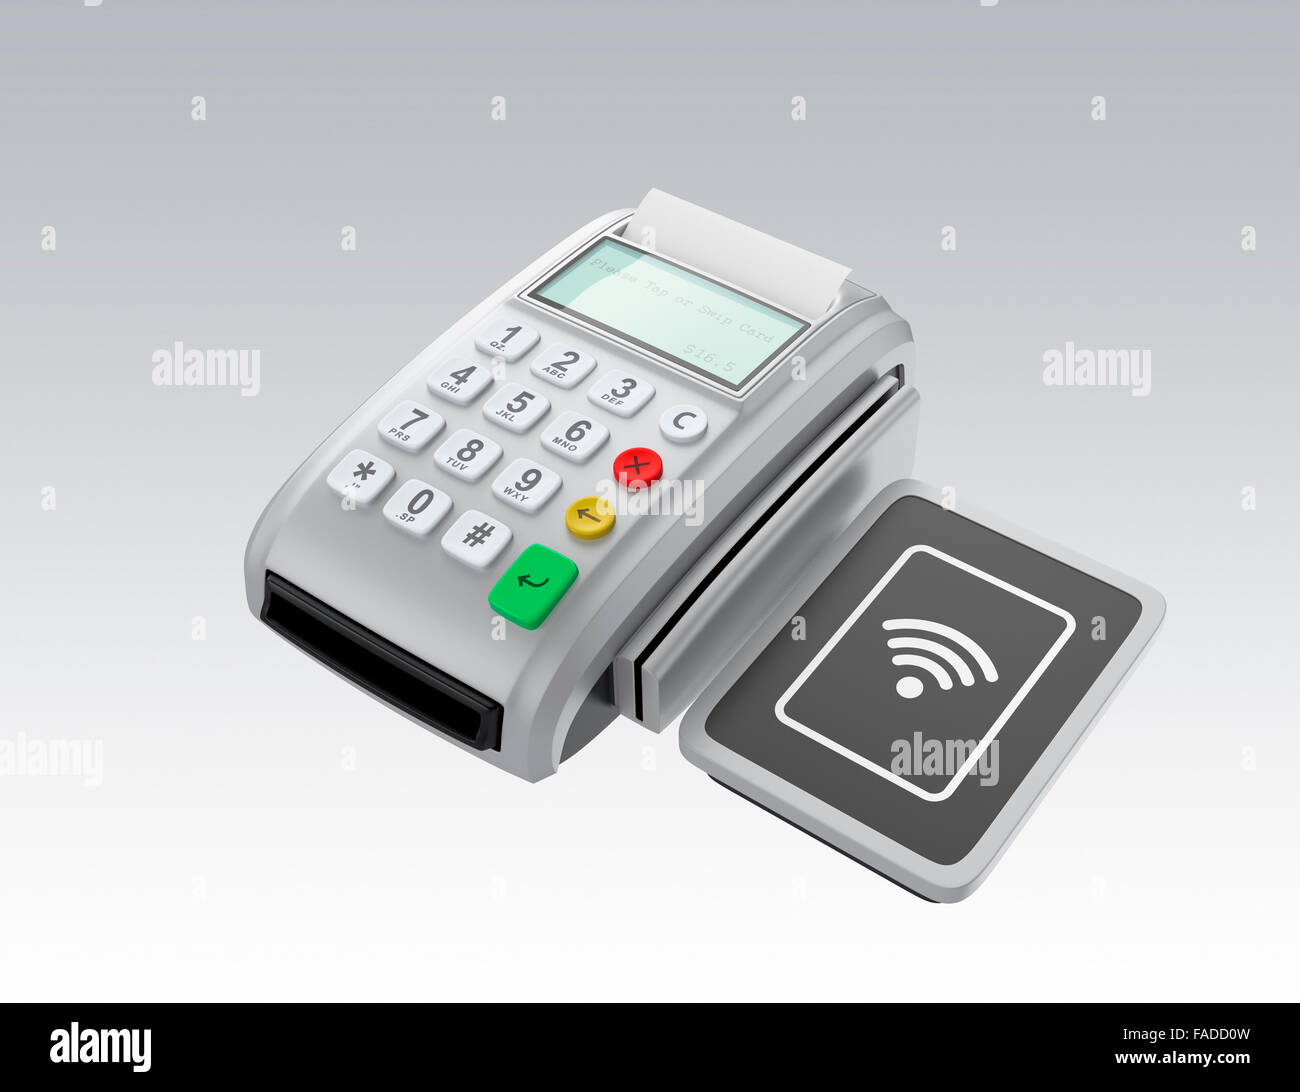 Tpv avec touch-pad moins pour système nfc. Concept de paiement mobile sans espèces intelligentes. Banque D'Images